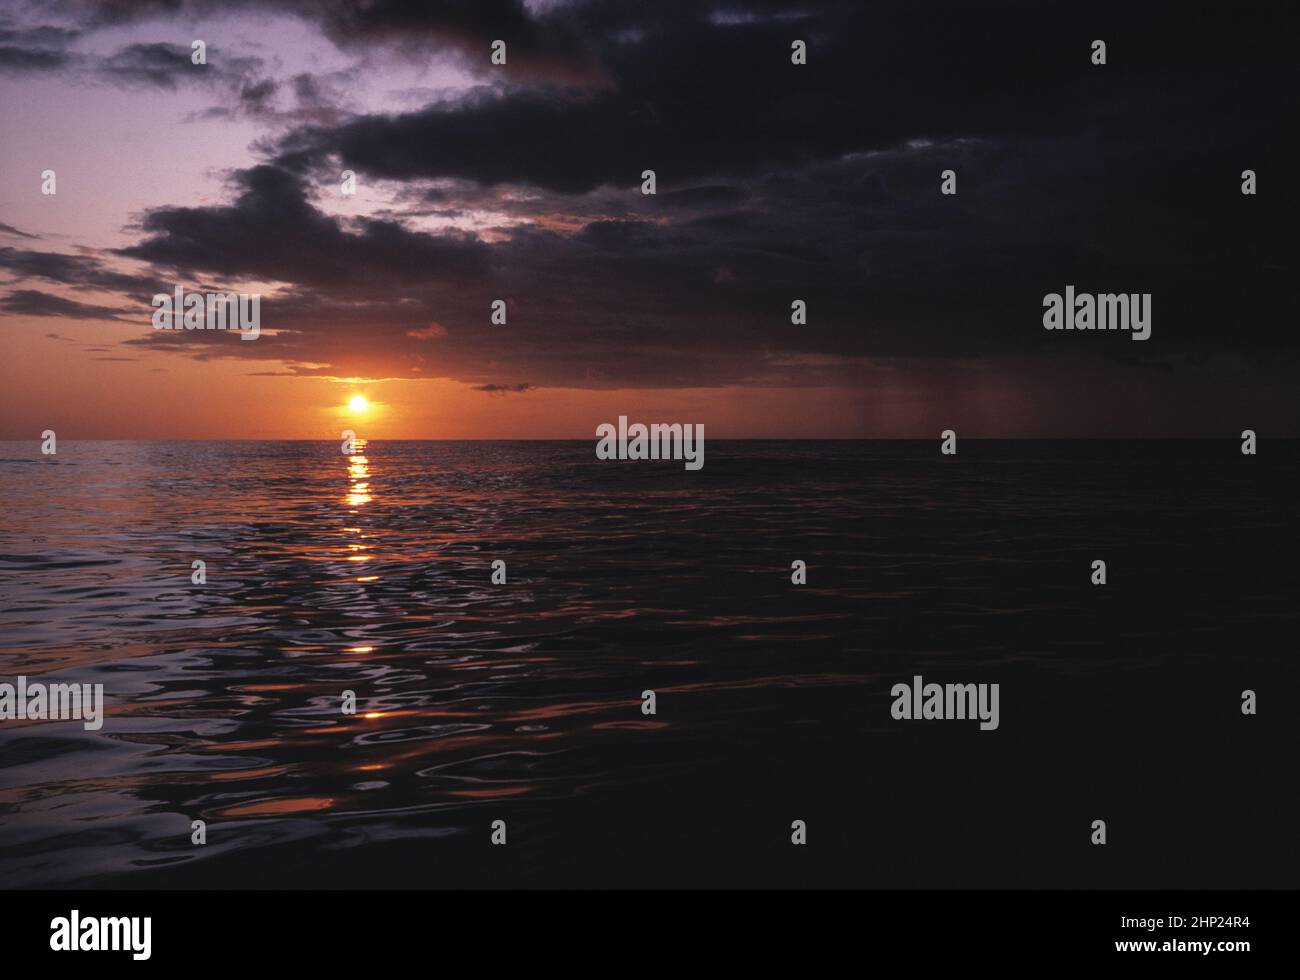 Australie. Lever de soleil orageux au-dessus de l'océan Pacifique. Banque D'Images